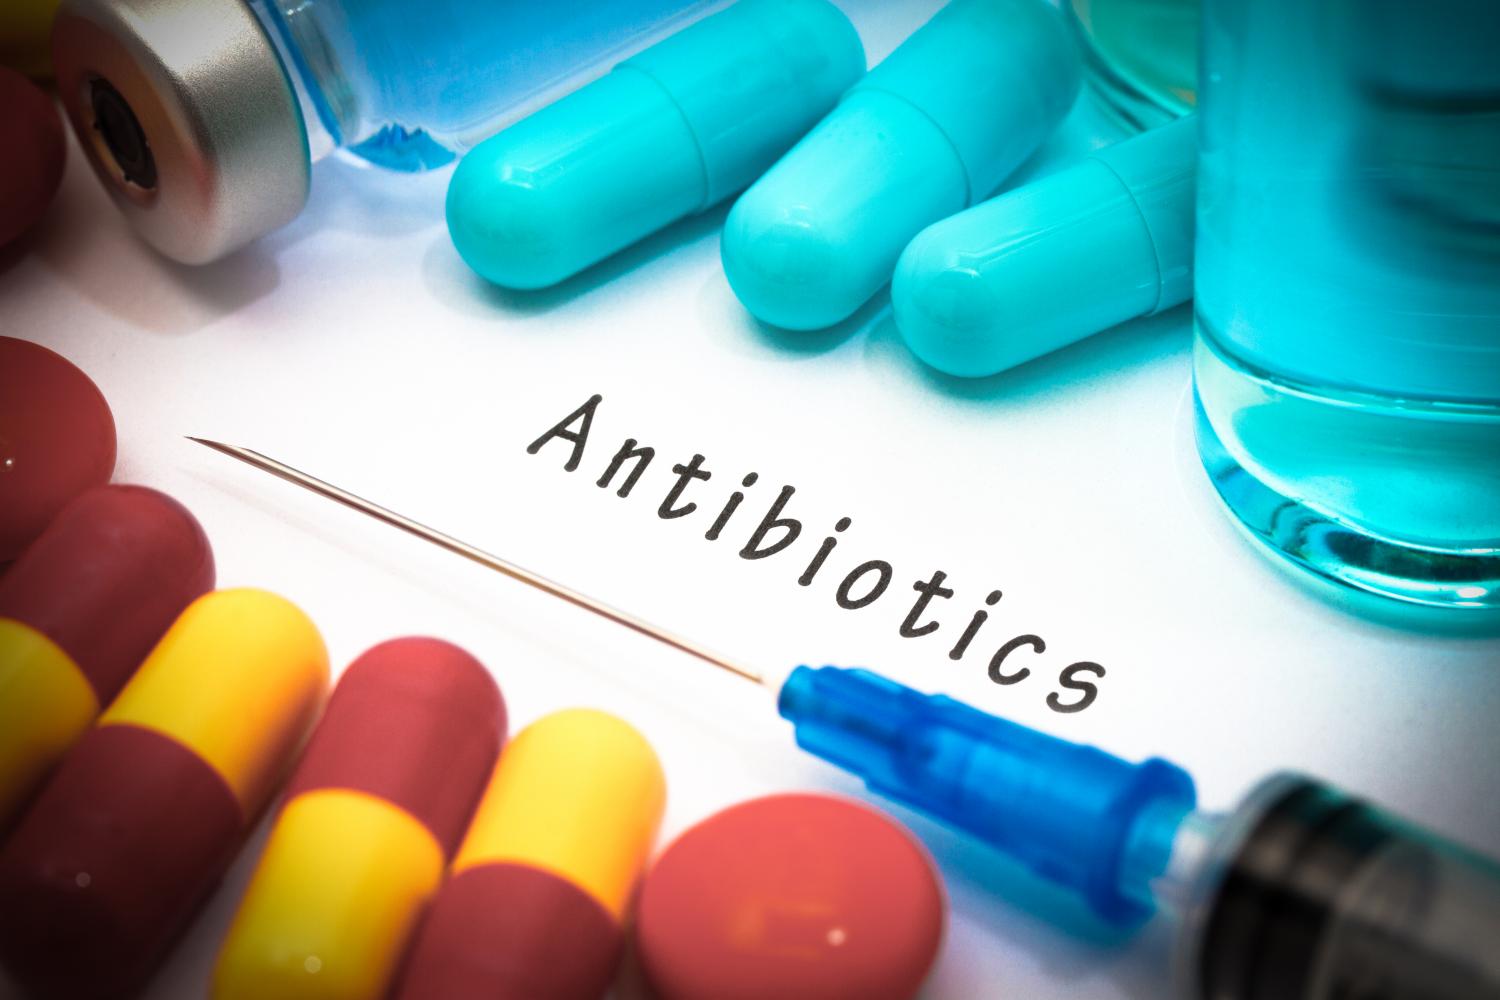 Antitbiotics